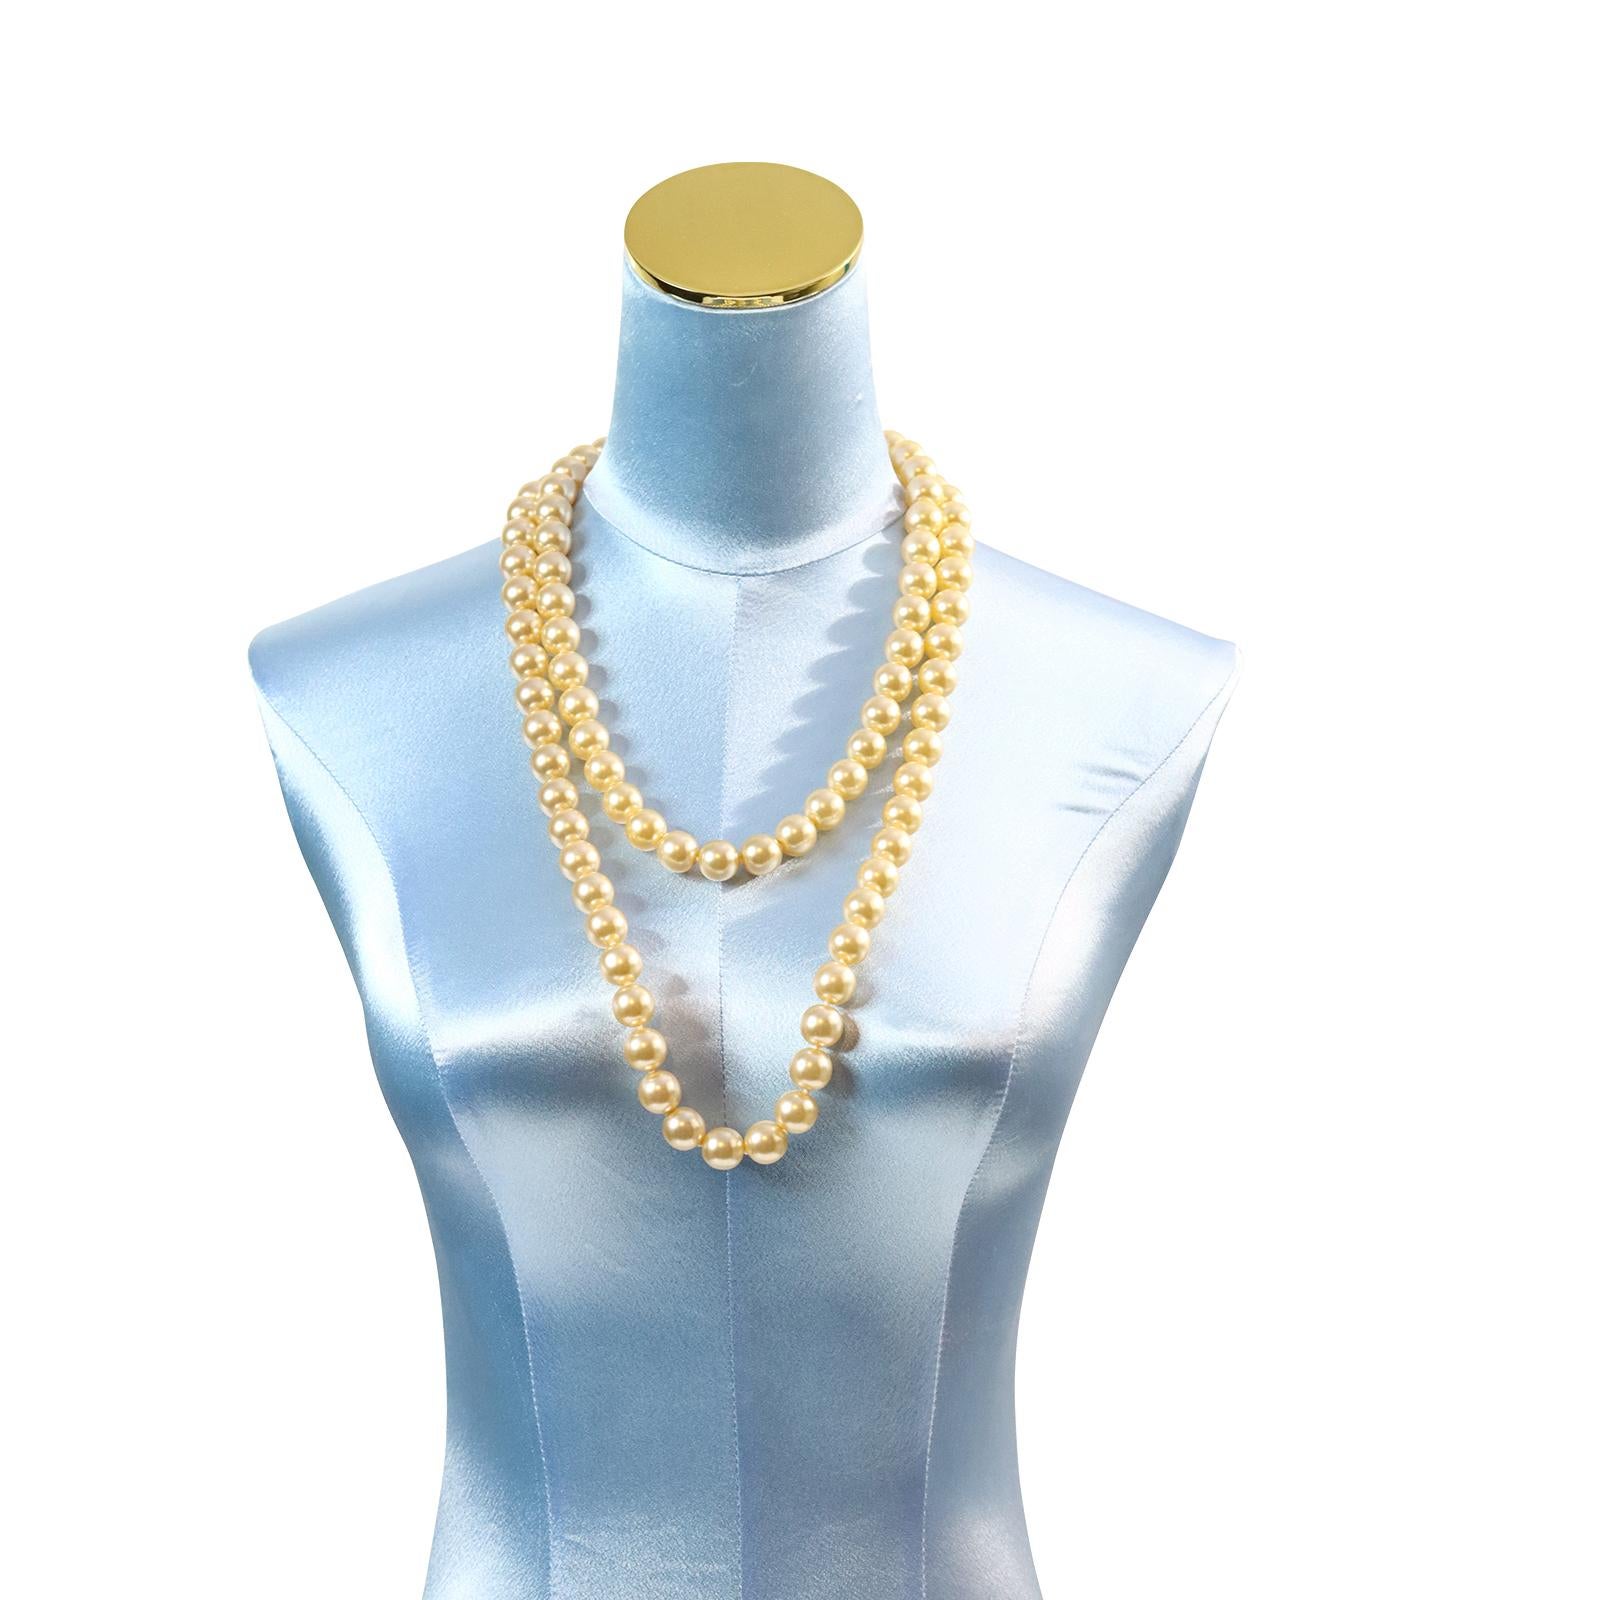 Vintage French Single Strand of Faux Pearls Necklace.  C'est si beau à porter seul et en plaine ou pour faire beaucoup de choses avec. Portez une broche sur elle ou enroulez-la en double. Un très beau collier de perles françaises.